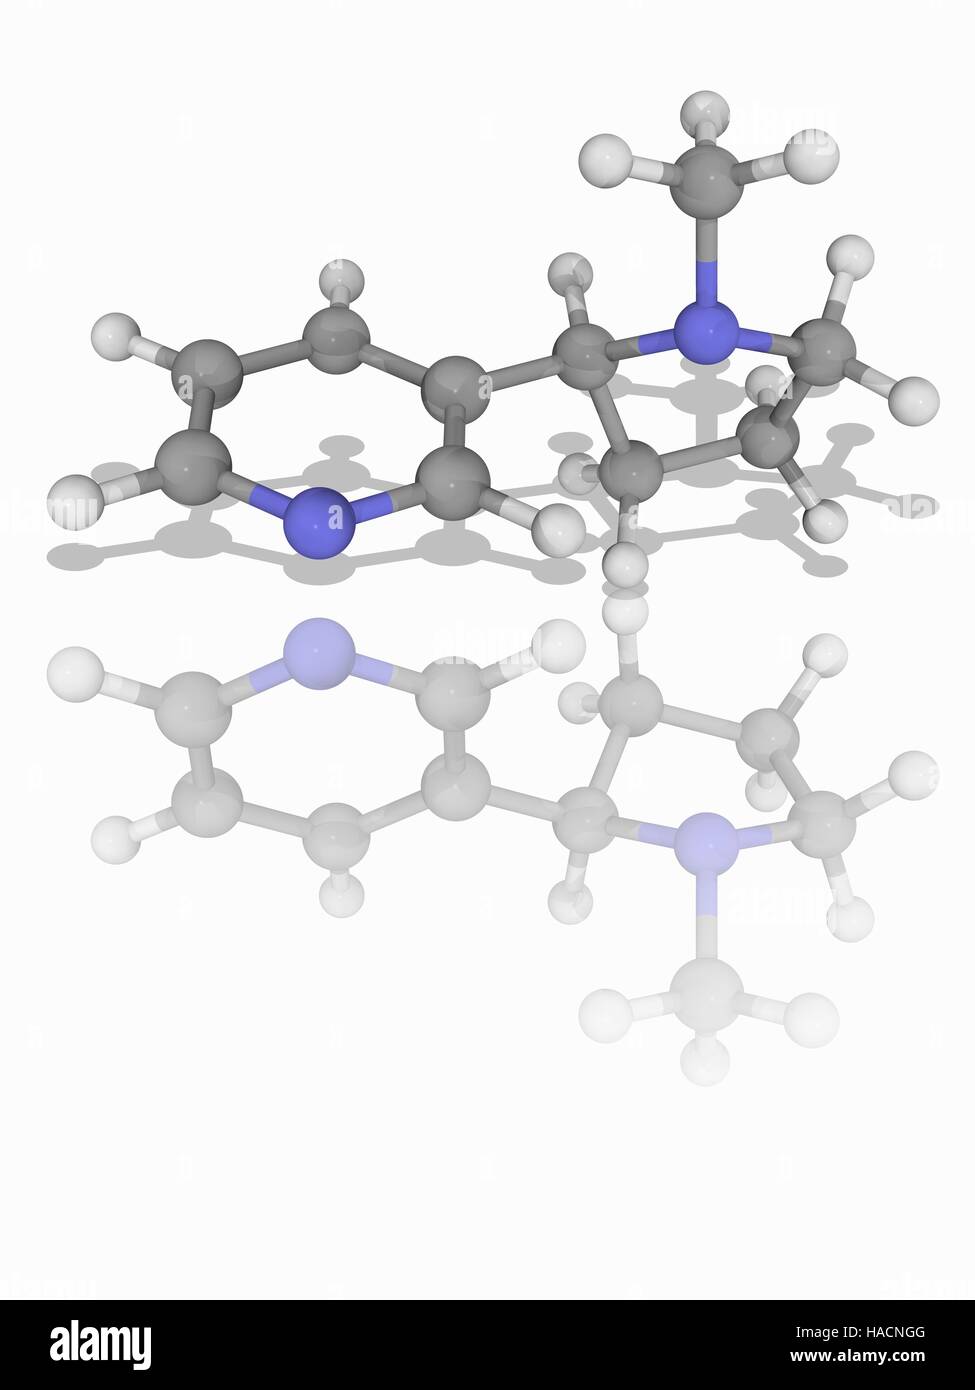 Nikotin. Molekulares Modell des das Alkaloid Nikotin (C10. H14. (N2), ein Stimulans natürlich in Pflanzen wie der Tabakpflanze (Nicotiana Tabacum) gefunden. Atome als Kugeln dargestellt werden und sind farblich gekennzeichnet: Kohlenstoff (grau), Wasserstoff (weiß) und Stickstoff (blau). Abbildung. Stockfoto